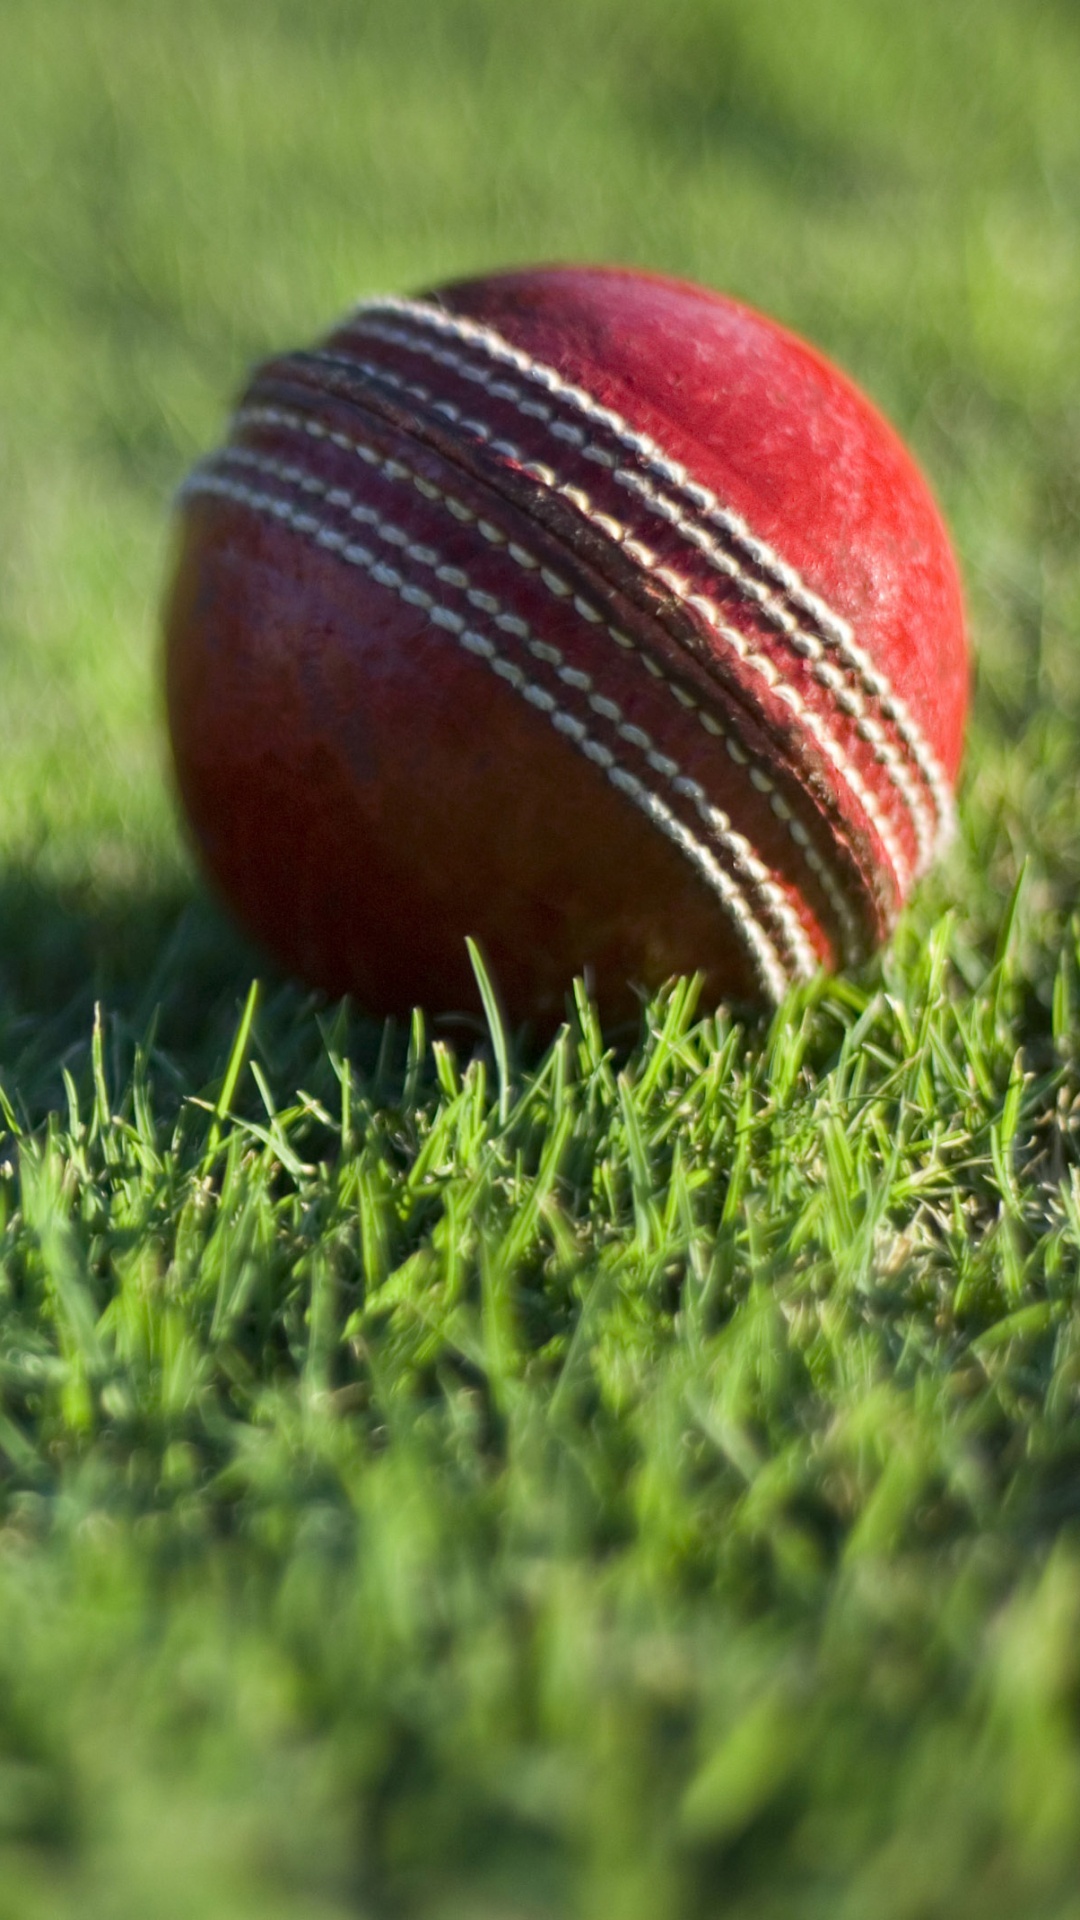 Обои крикет, Крикет мяч, мяч, игра с мячом, занятие спортом в разрешении 1080x1920